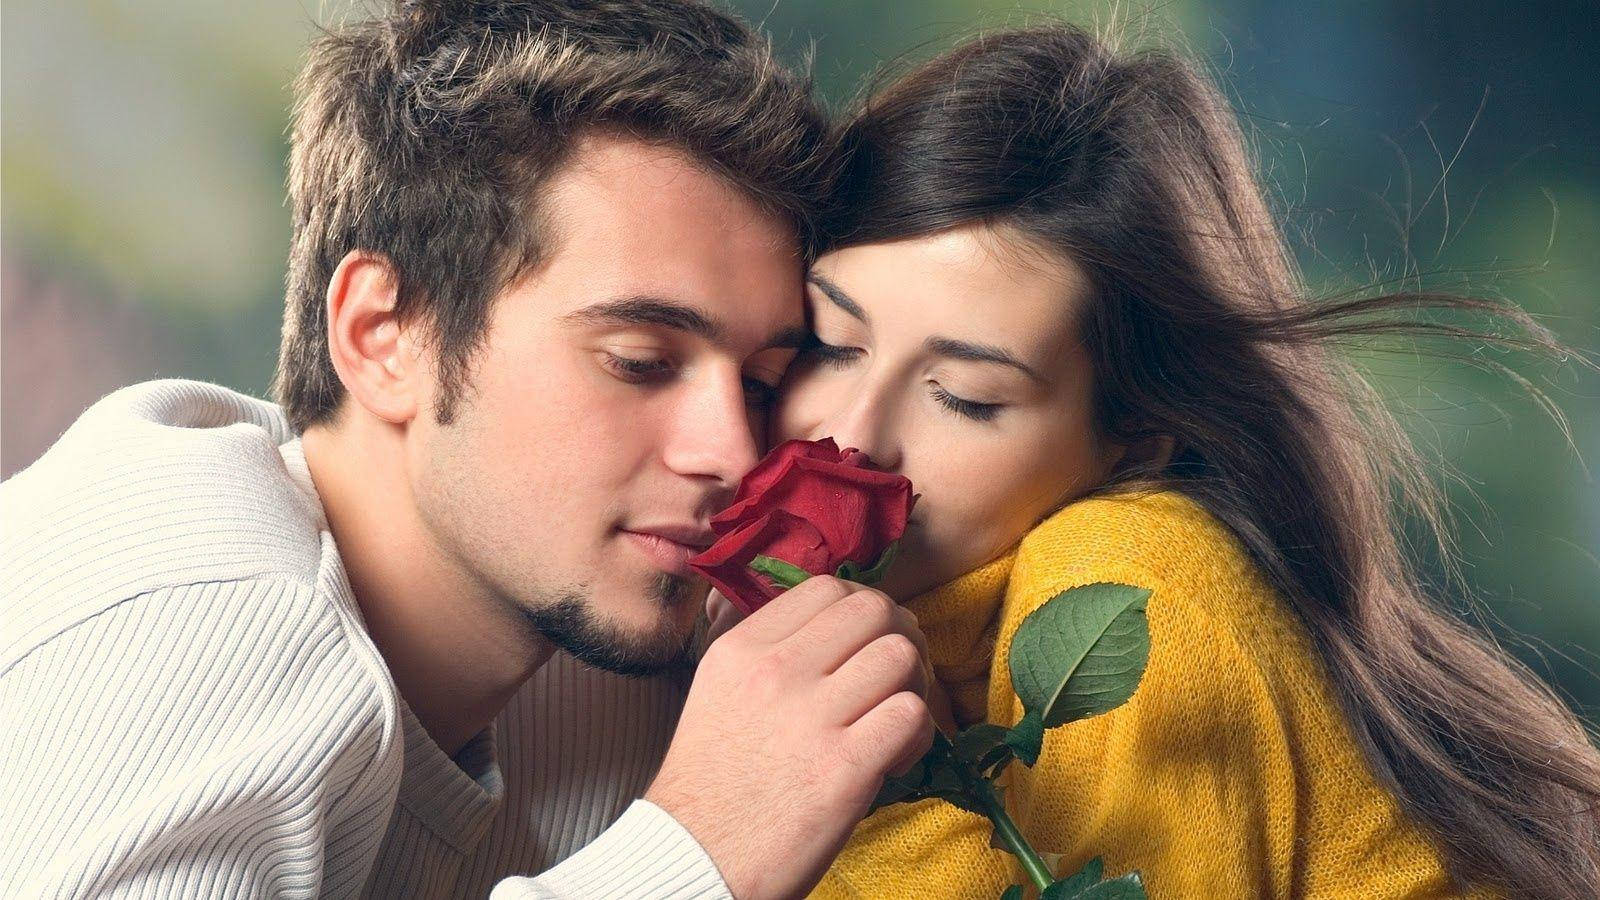 Romantischepaare, Die Eine Rose Riechen. Wallpaper